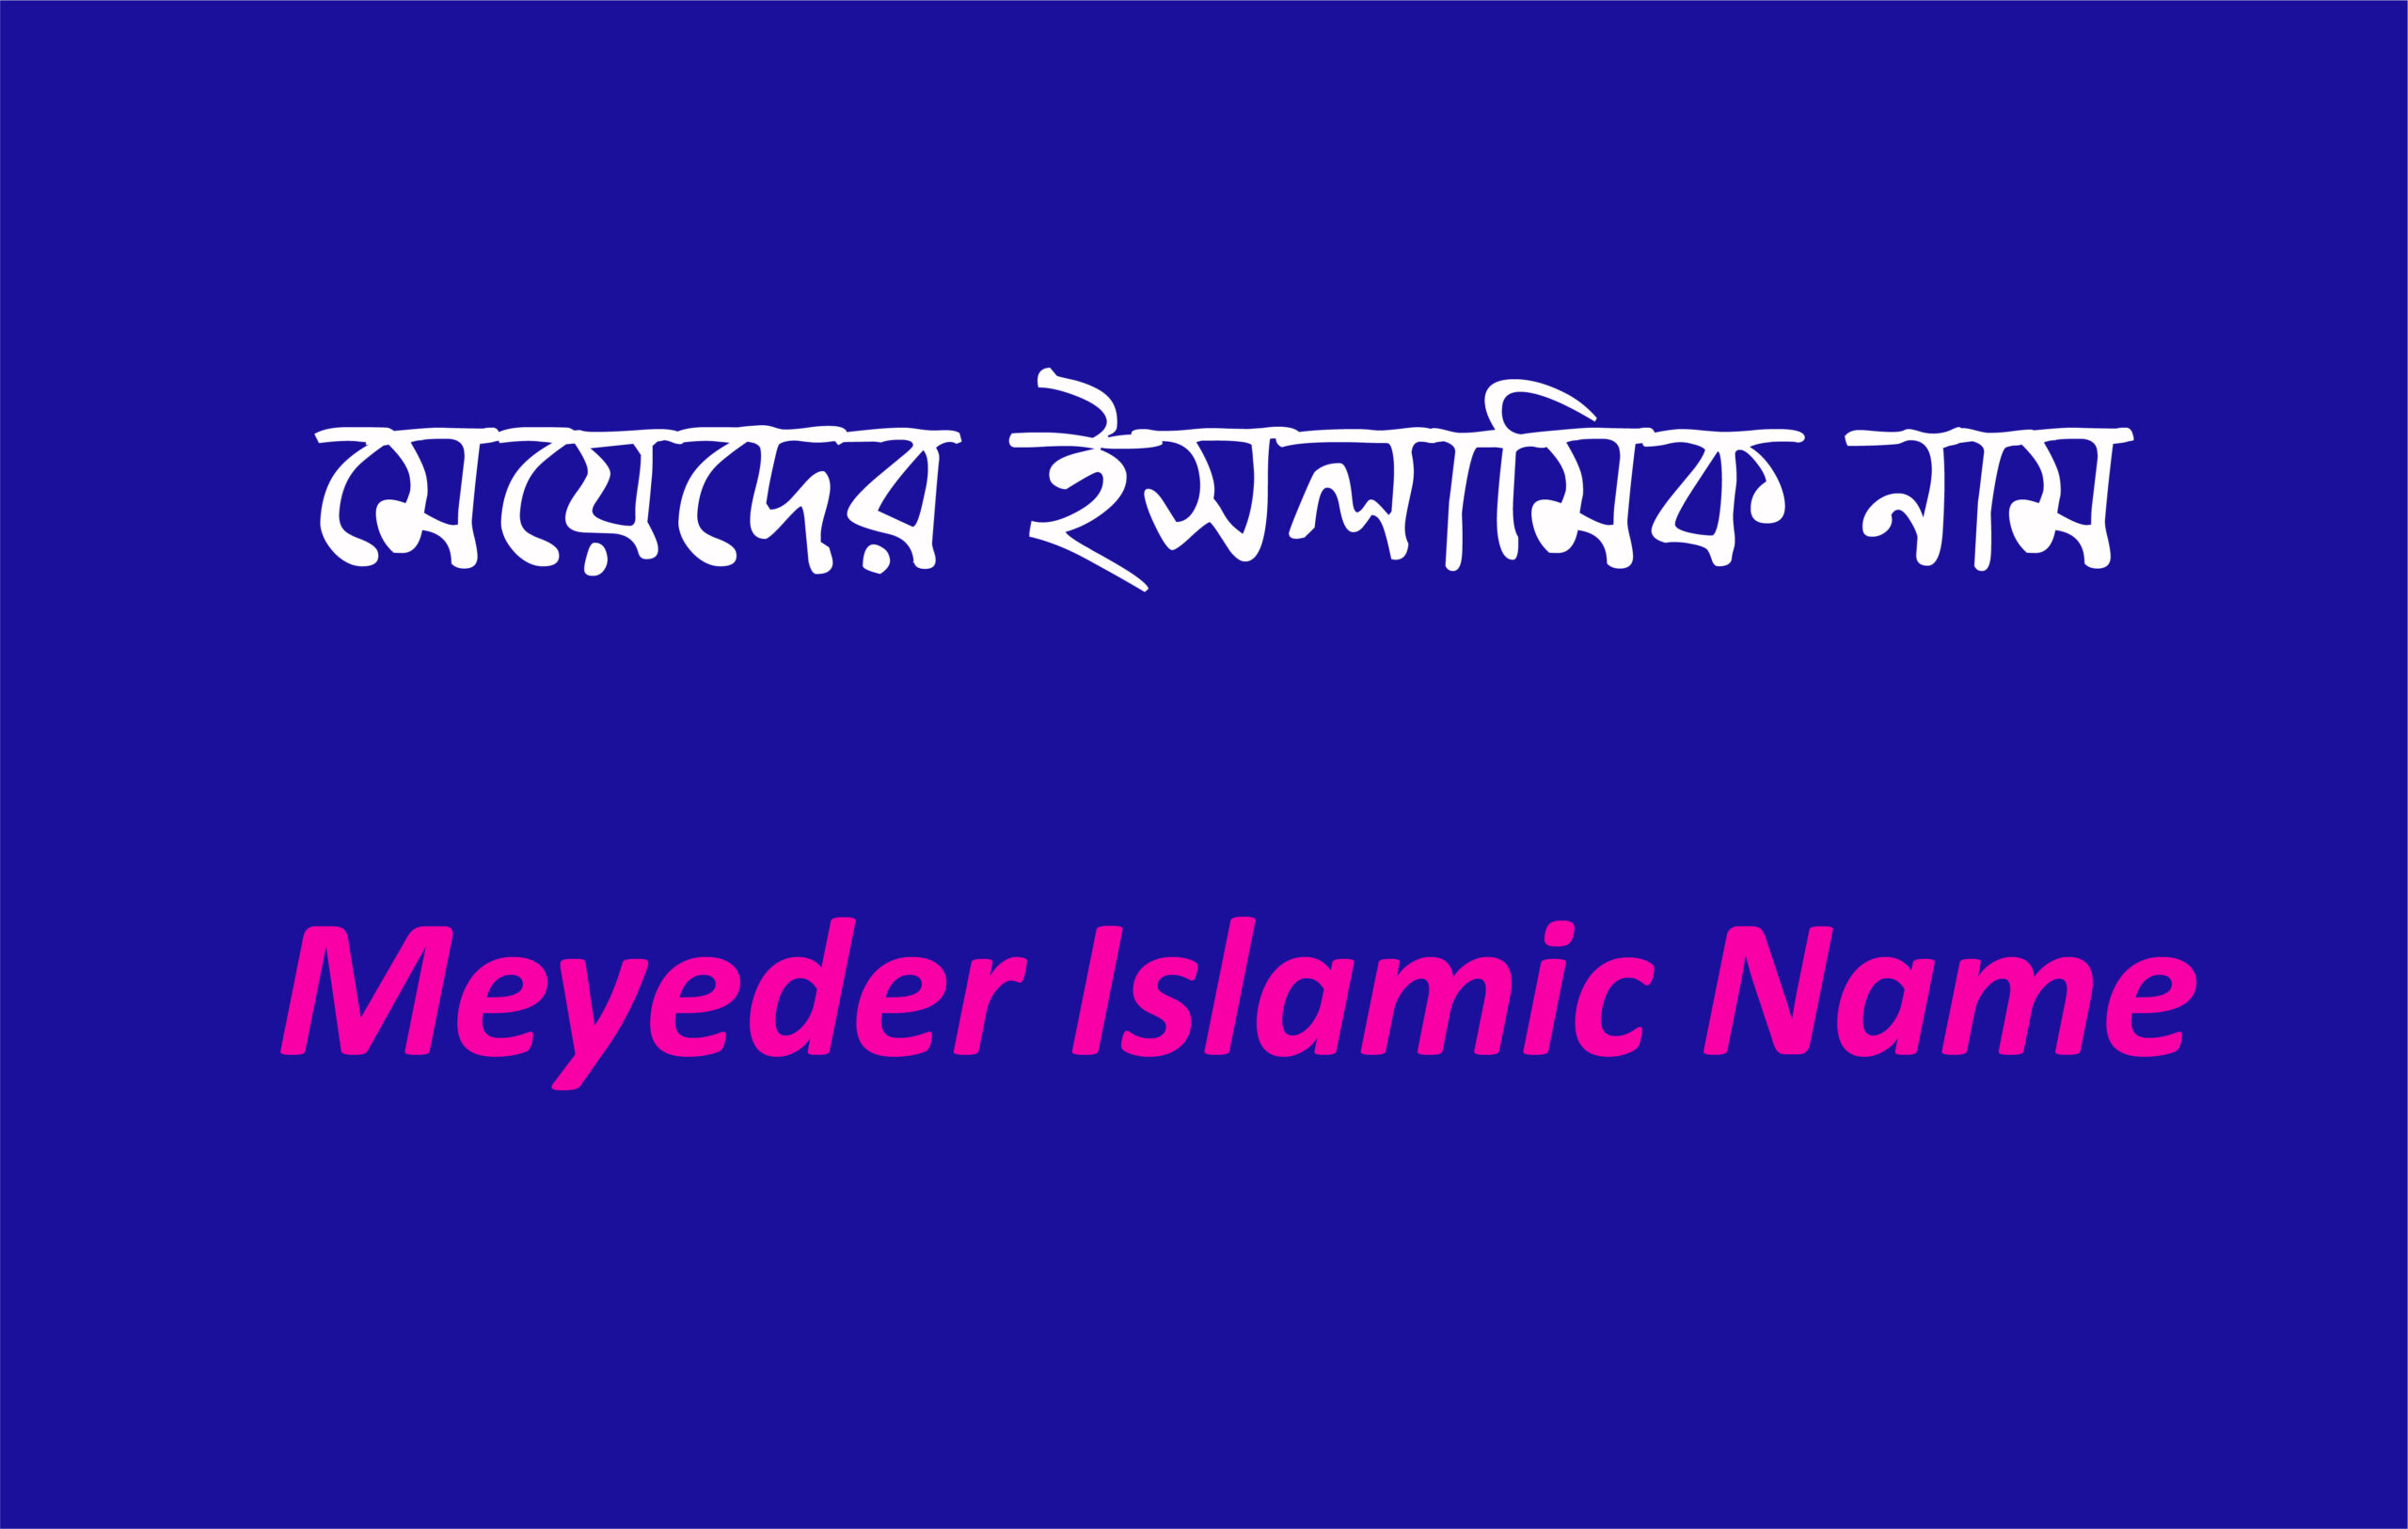 মেয়েদের ইসলামিক নাম (Meyeder Islamic Name)